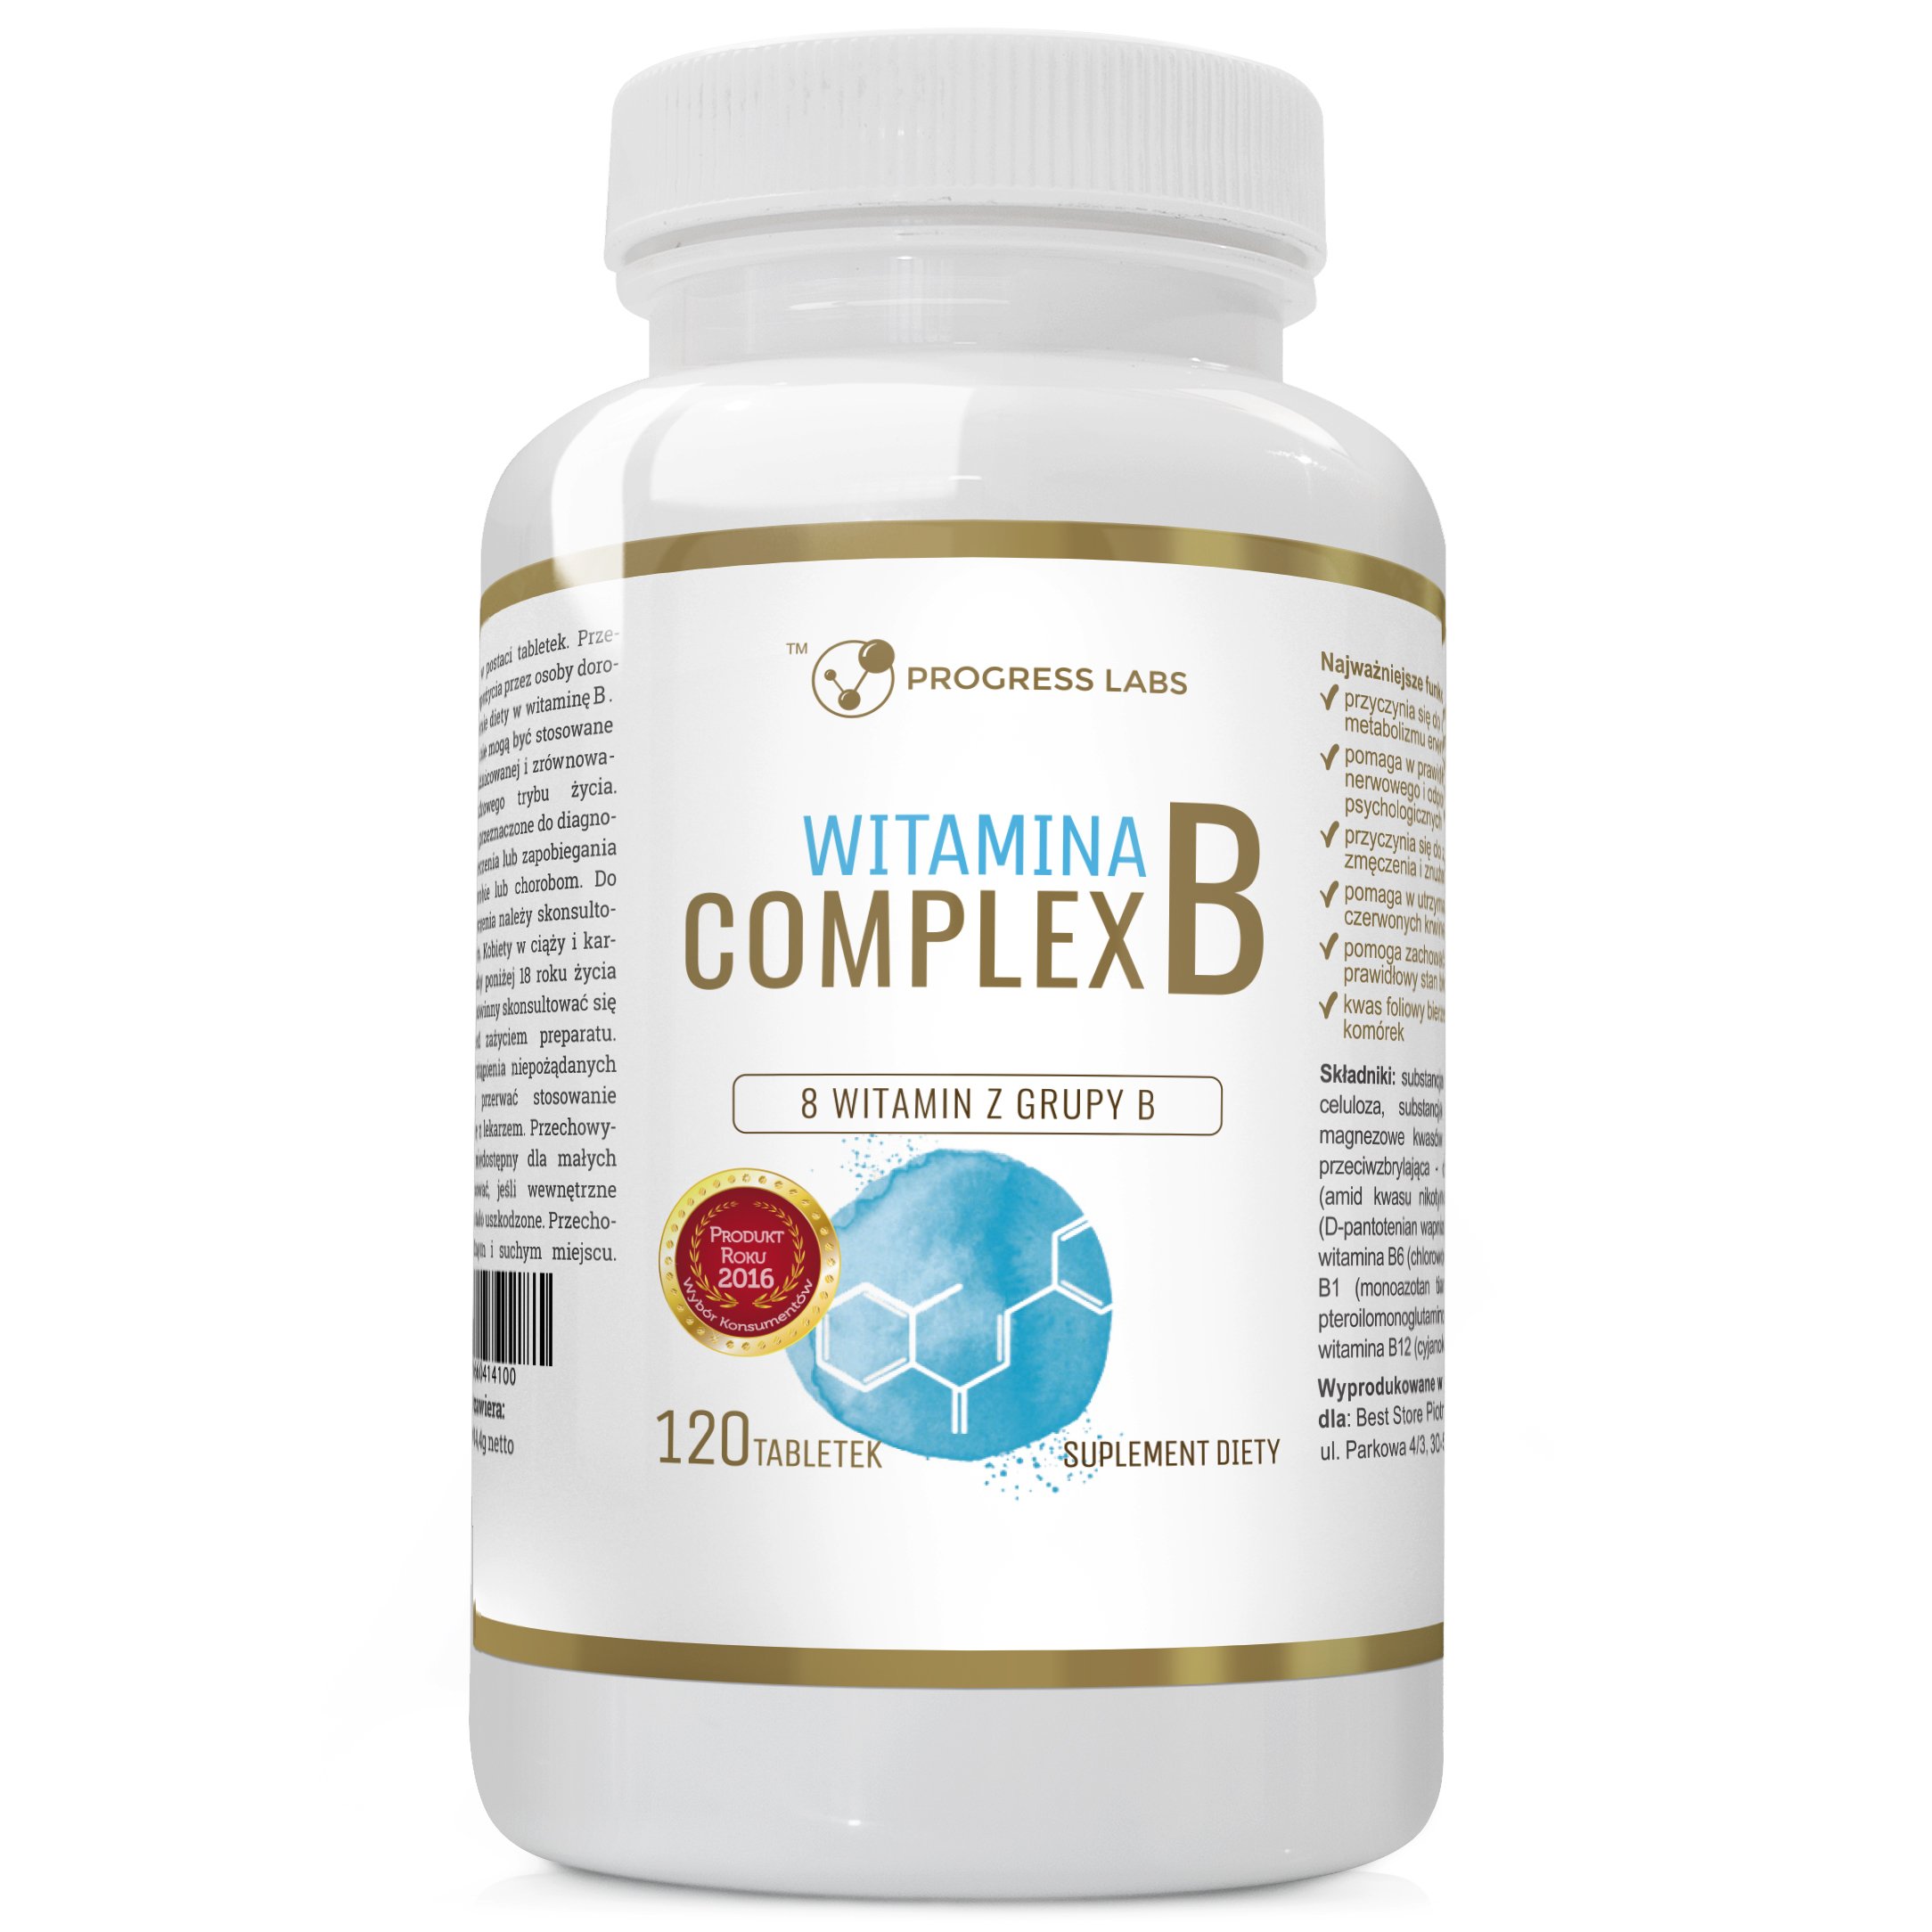 Какие есть витамины таблетки. Комплекс витамины в 1 6 12 в таблетках. Комплекс витаминов в1, в6, в3. Витаминный комплекс b6 b9 b12. Витамины b1 b6 b9 b12 комплекс.